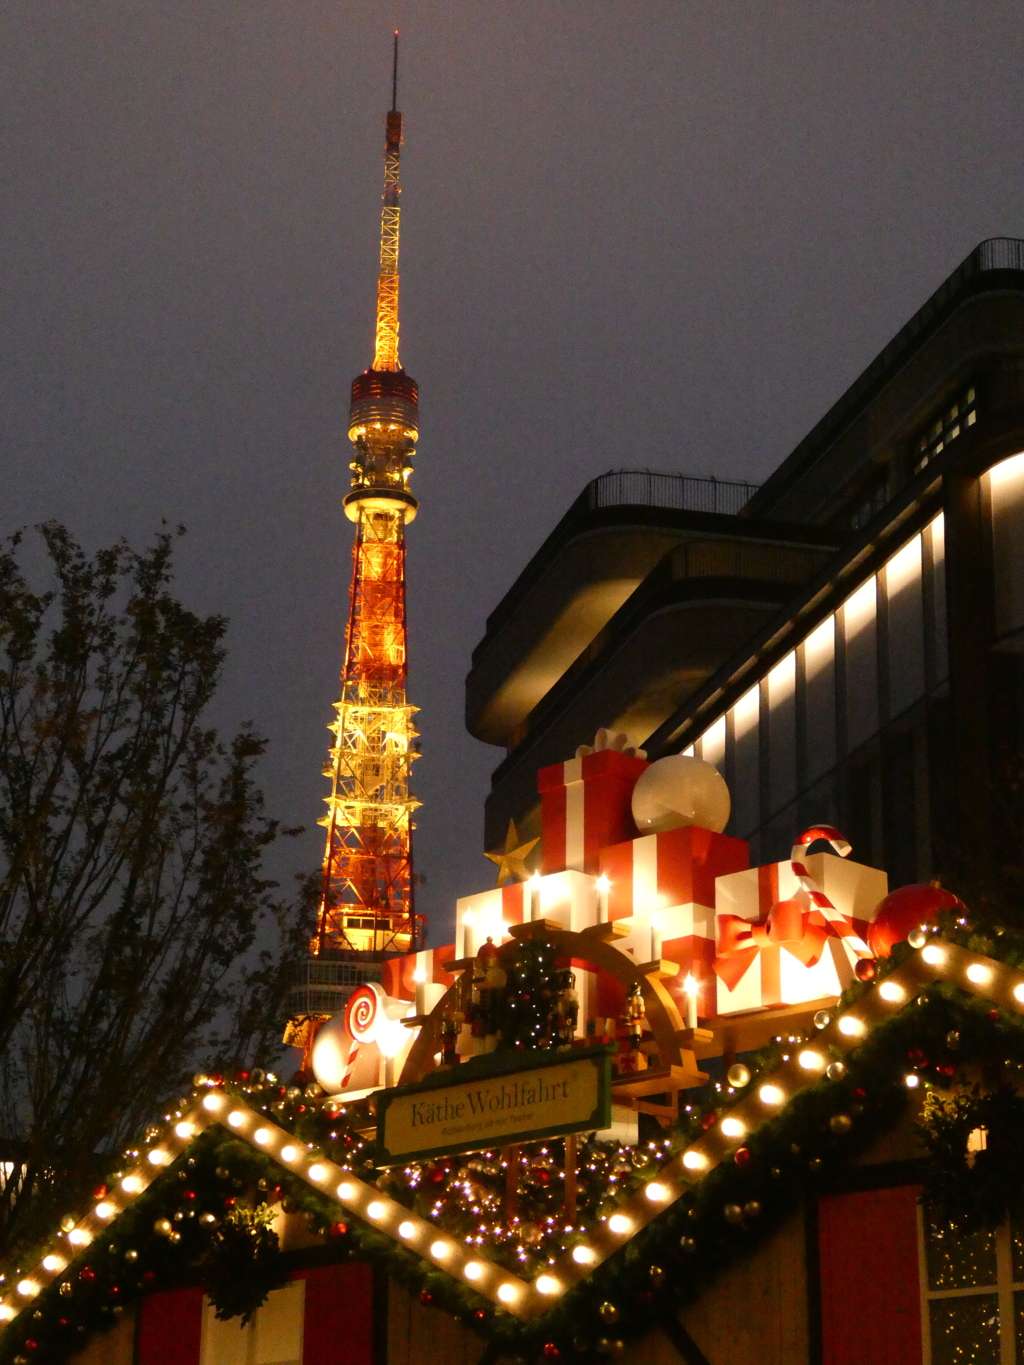 ケーテ・ウォルファルトと東京タワー